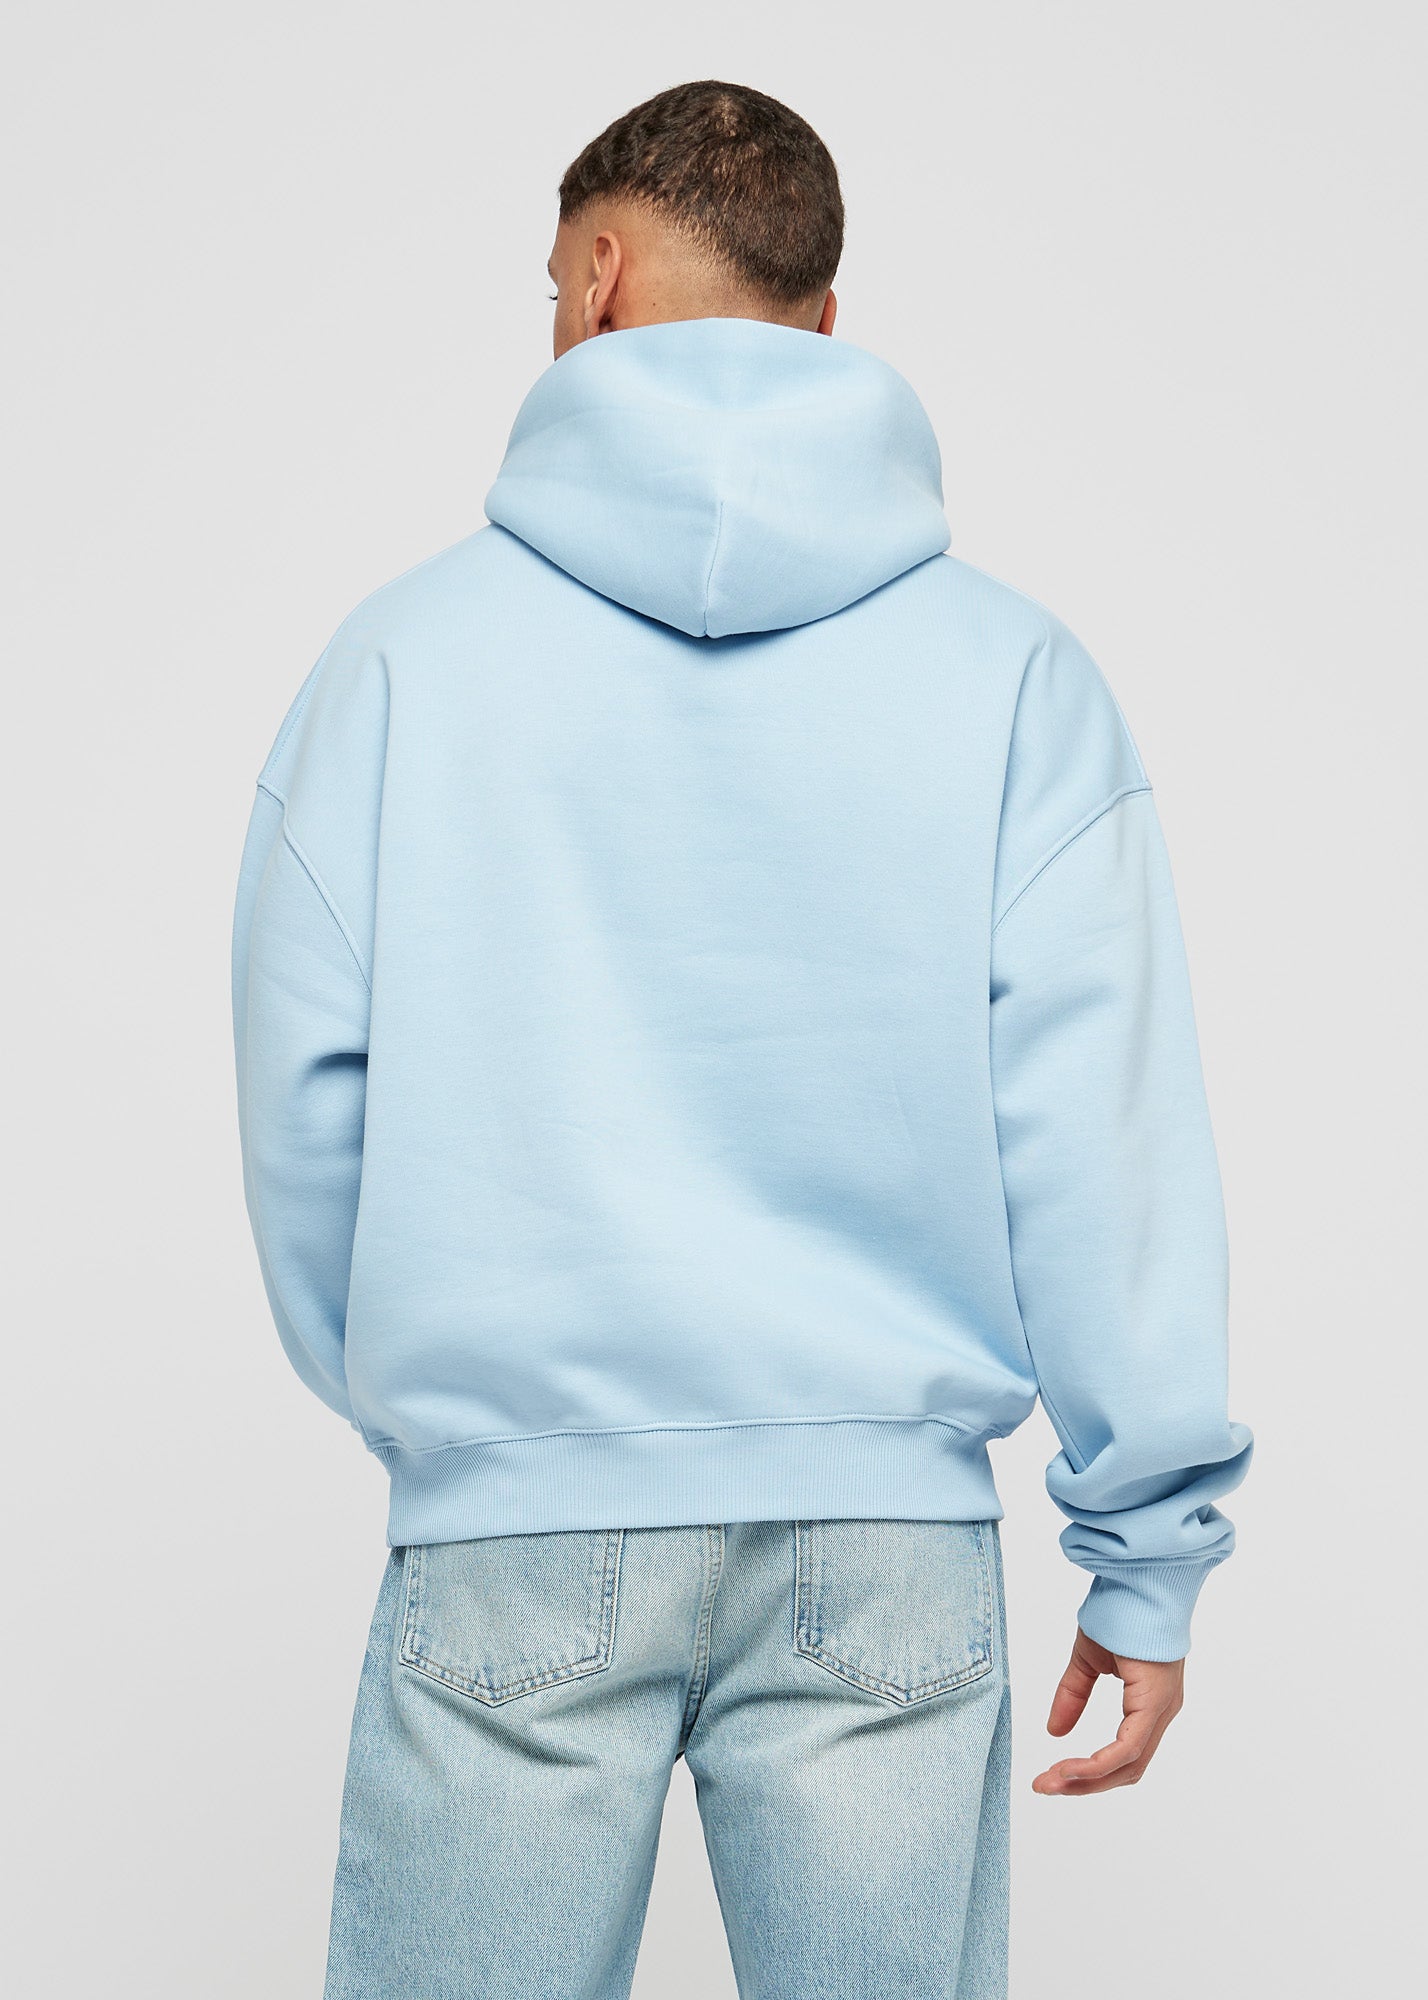 Babyblauwe basic oversized hoodie